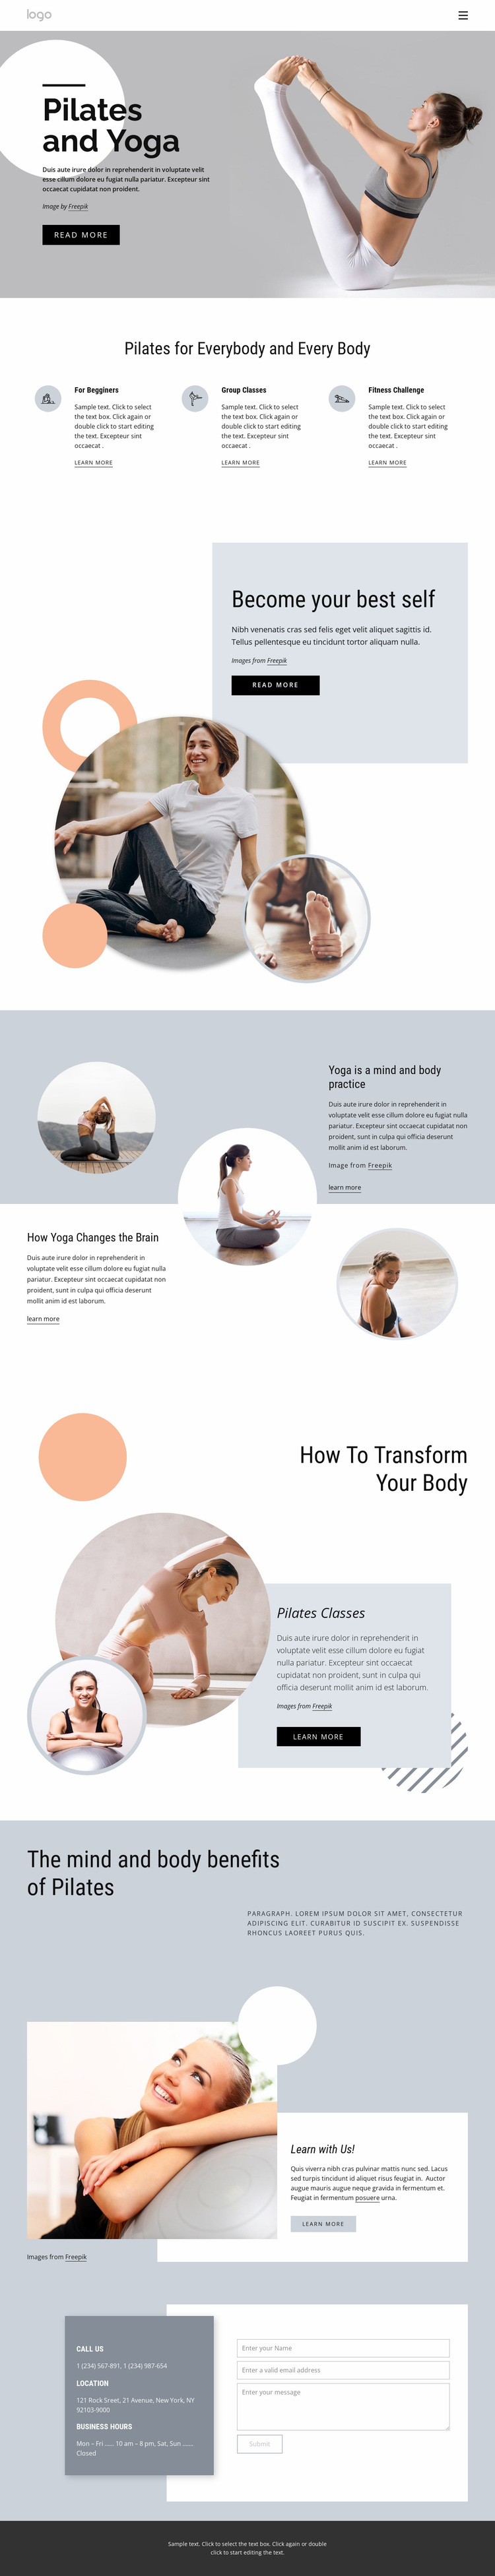 Pilates and yoga center Website Design